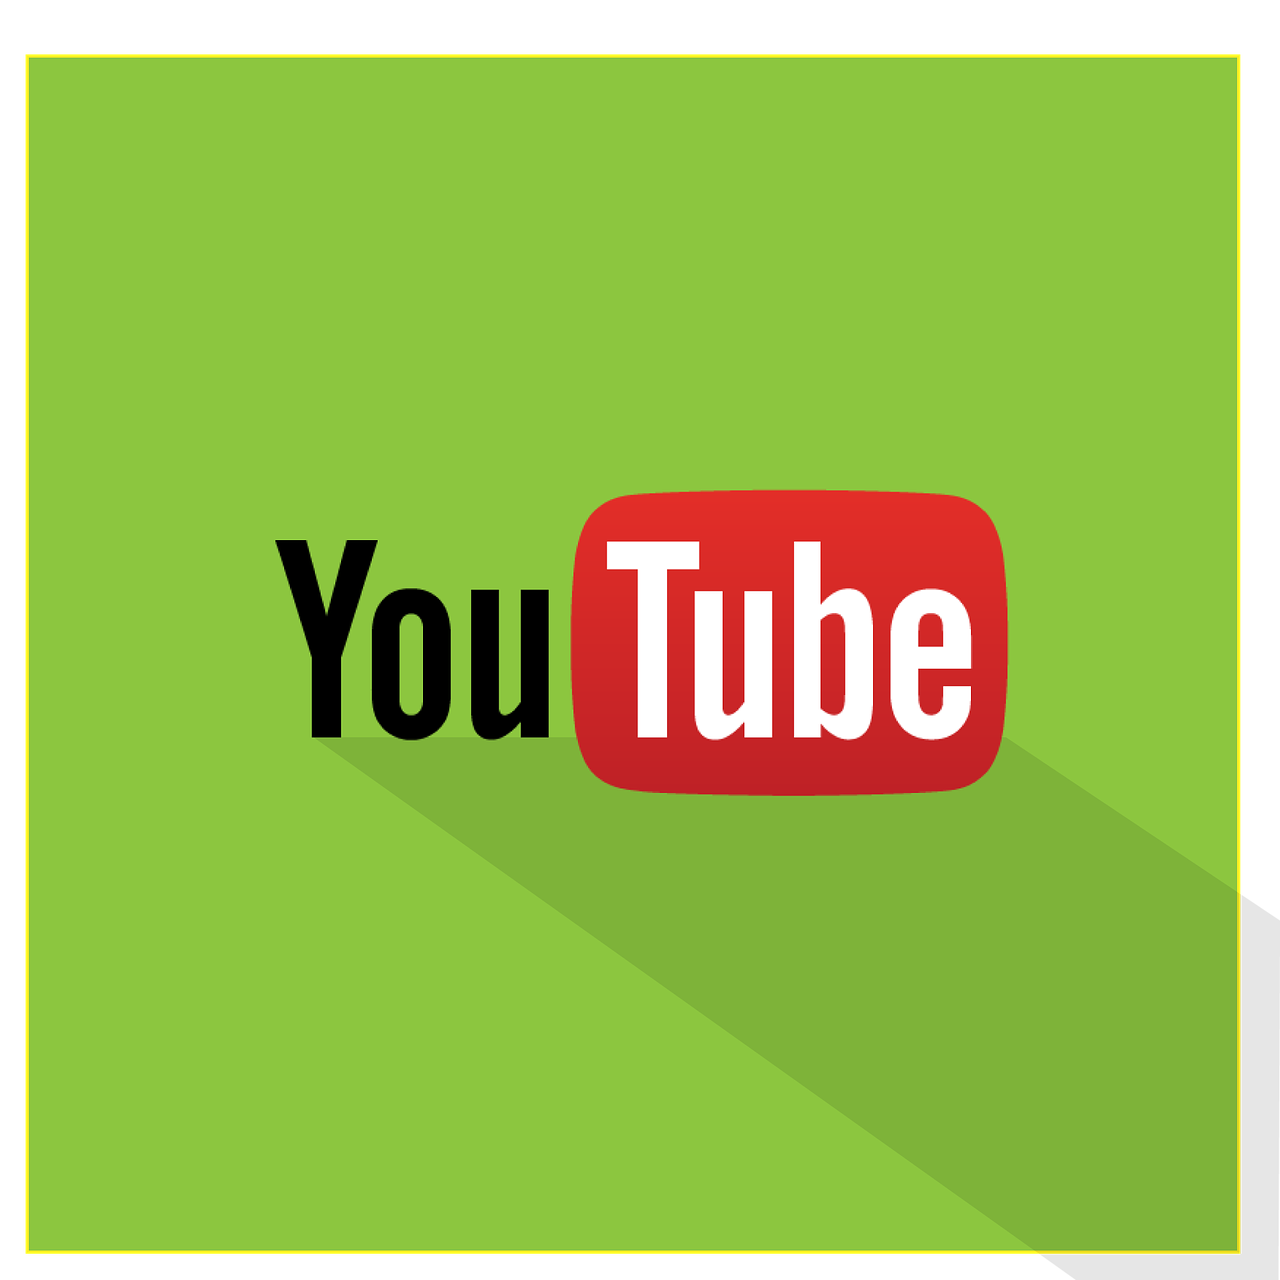 youtube flat logo free photo